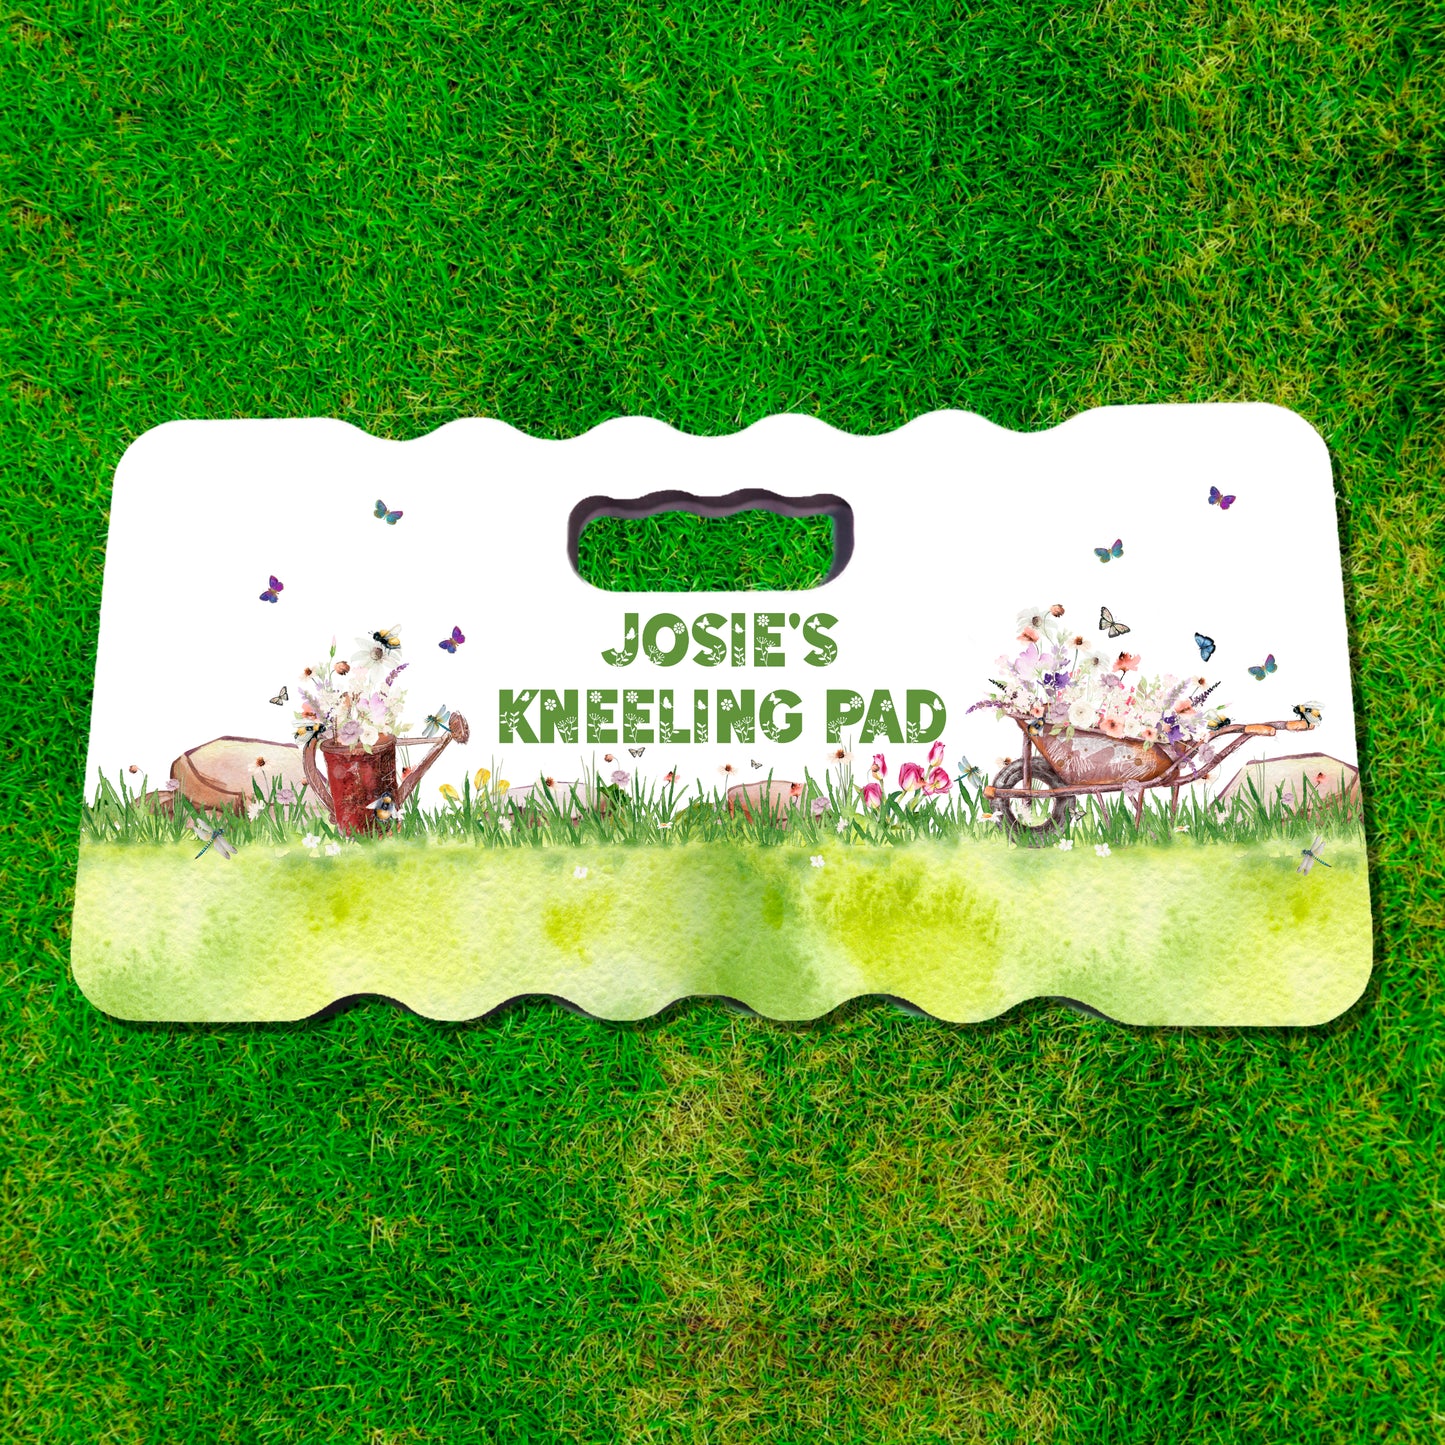 Foam kneeling pad with floral watering can and wheelbarrow josie's kneeling pad